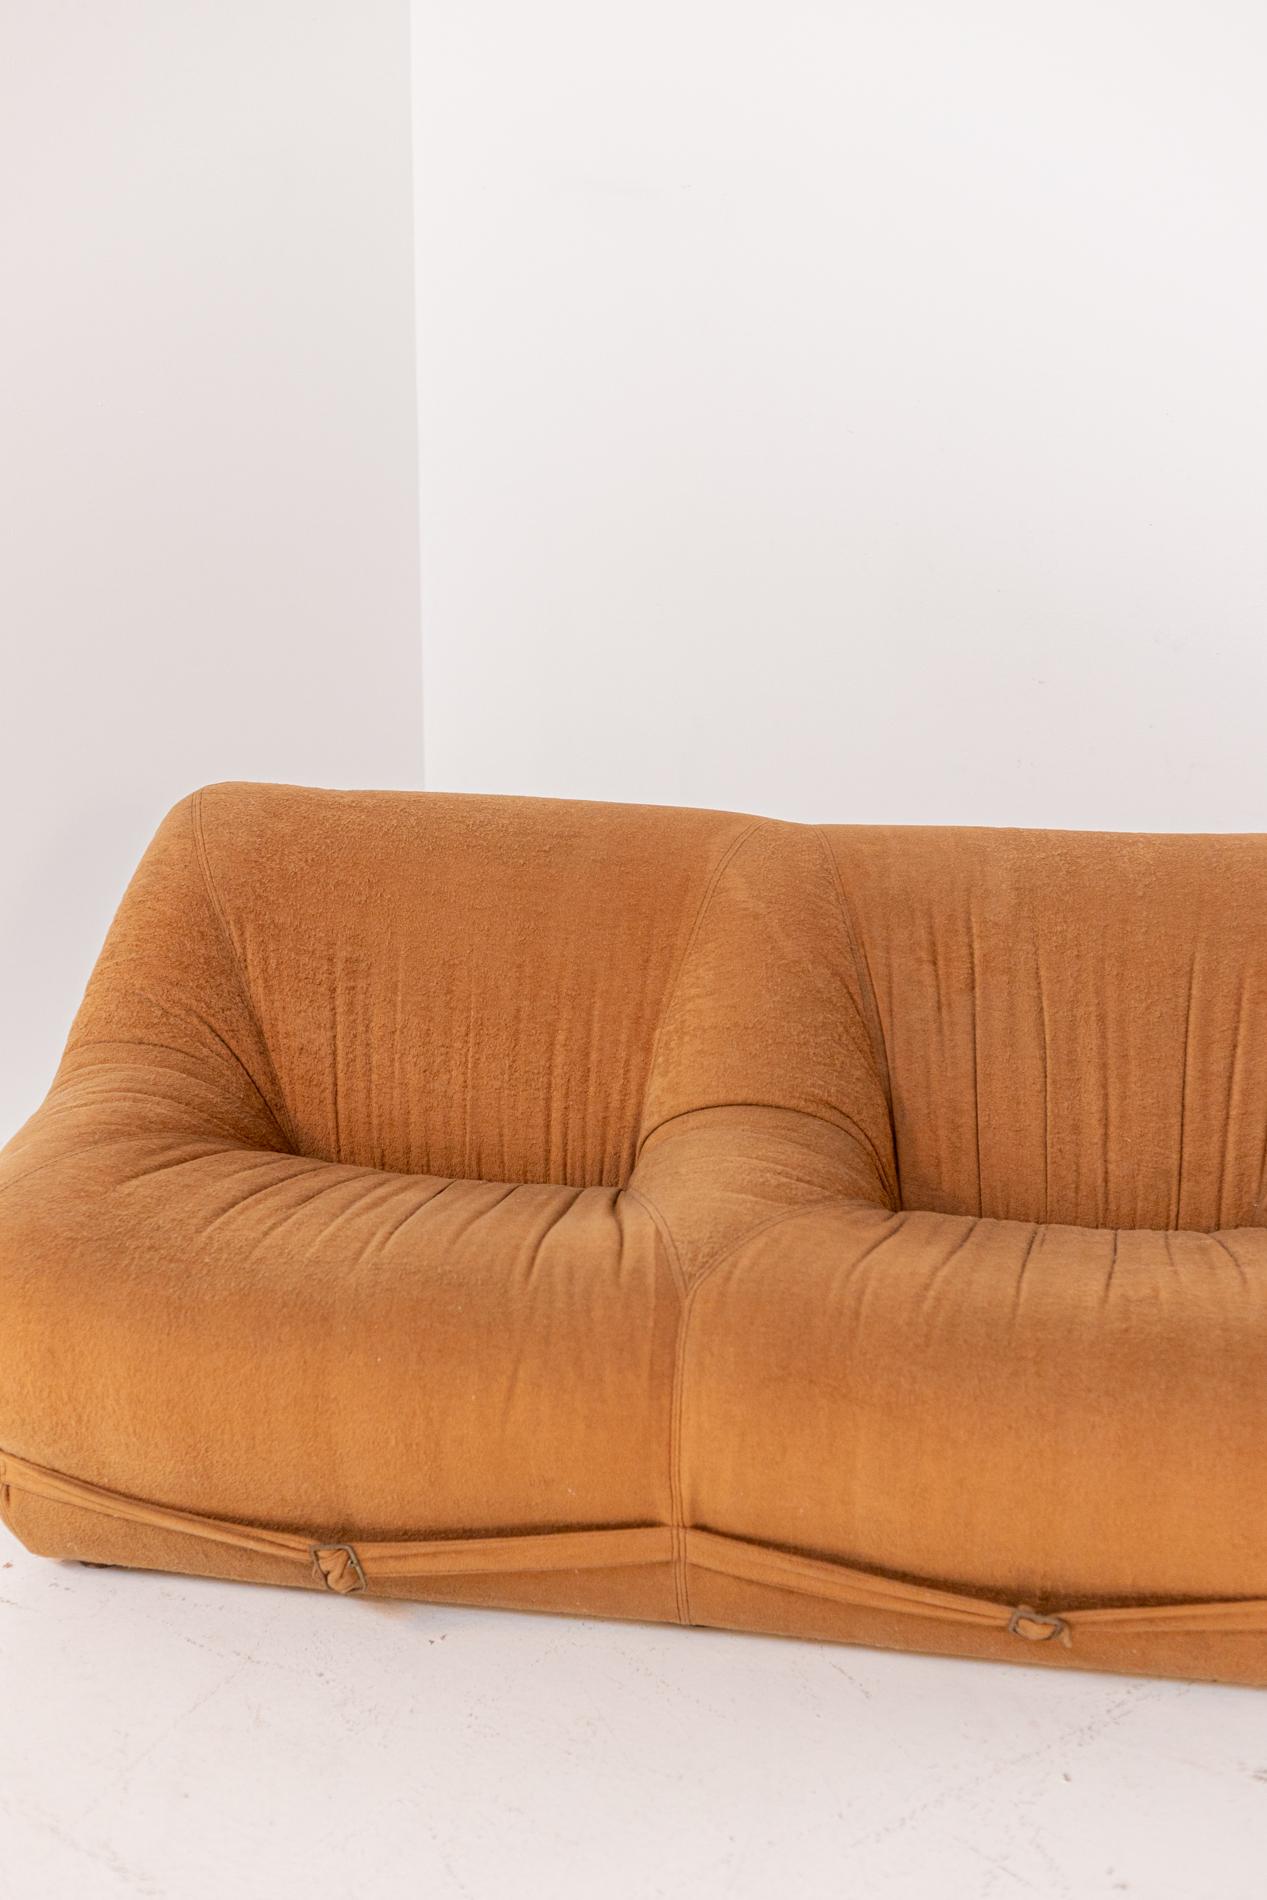 Space Age Italian Sofa in Orange Velvet Fabric 5